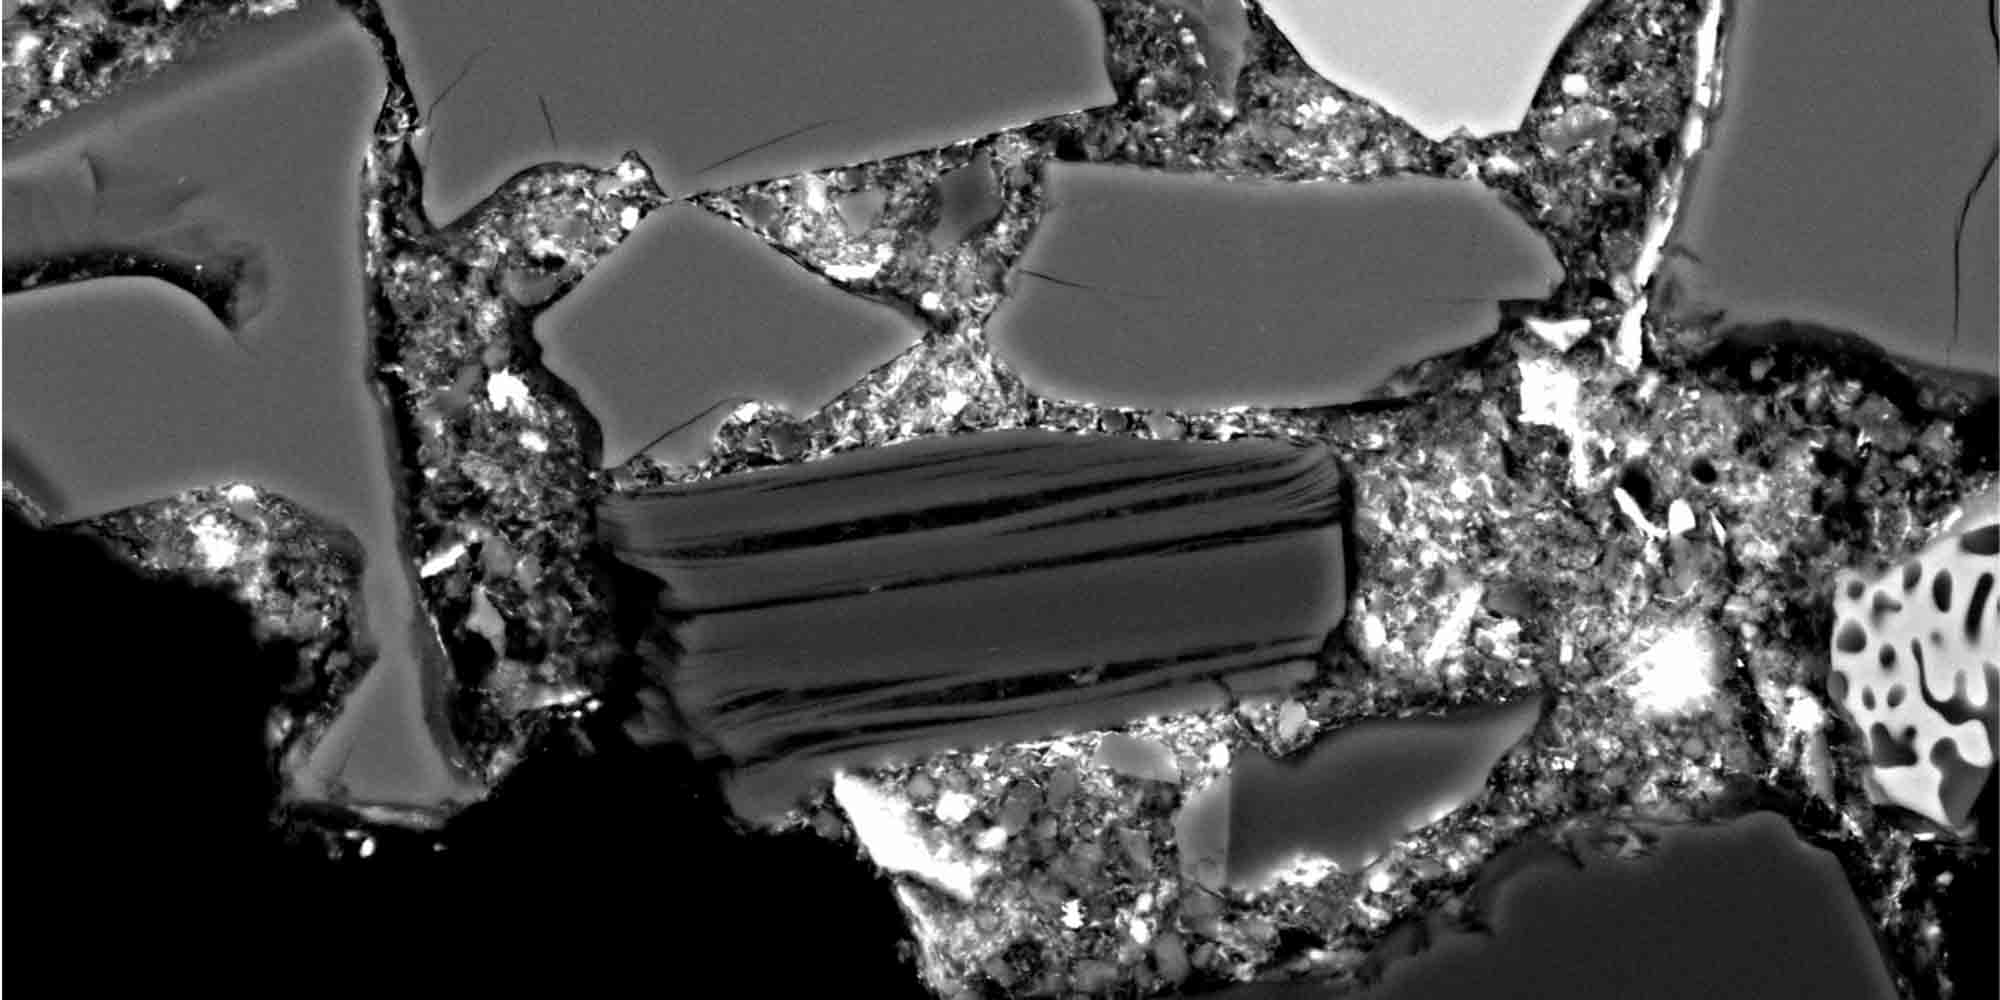 Έλληνας επιστήμονας ανακάλυψε ένυδρα ορυκτά σε μετεωρίτη – Η αναπάντεχη πηγή προέλευσης του νερού